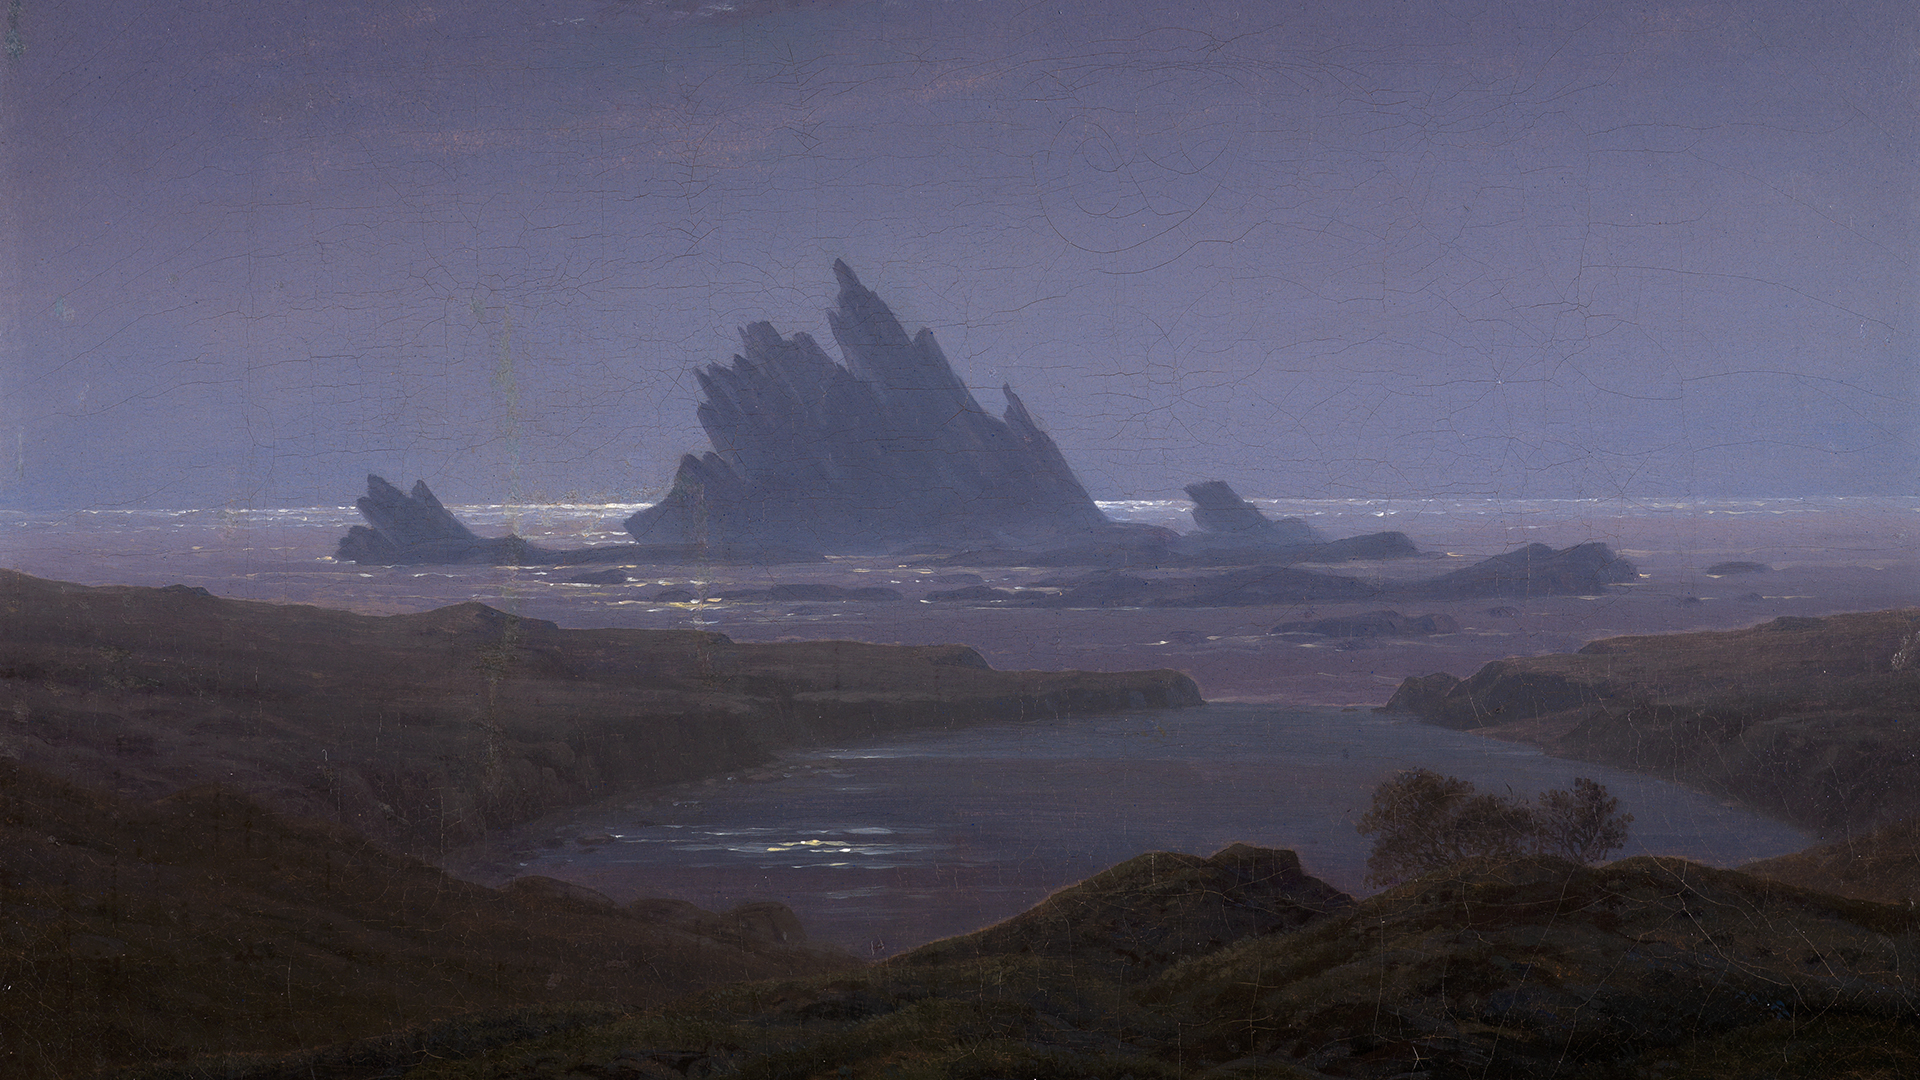 Detail des Gemäldes Felsenriff am Meeresstrand von Caspar David Friedrich, entstanden 1824. Es zeigt einen im Meer stehenden Felsen im violetten Morgenrot.